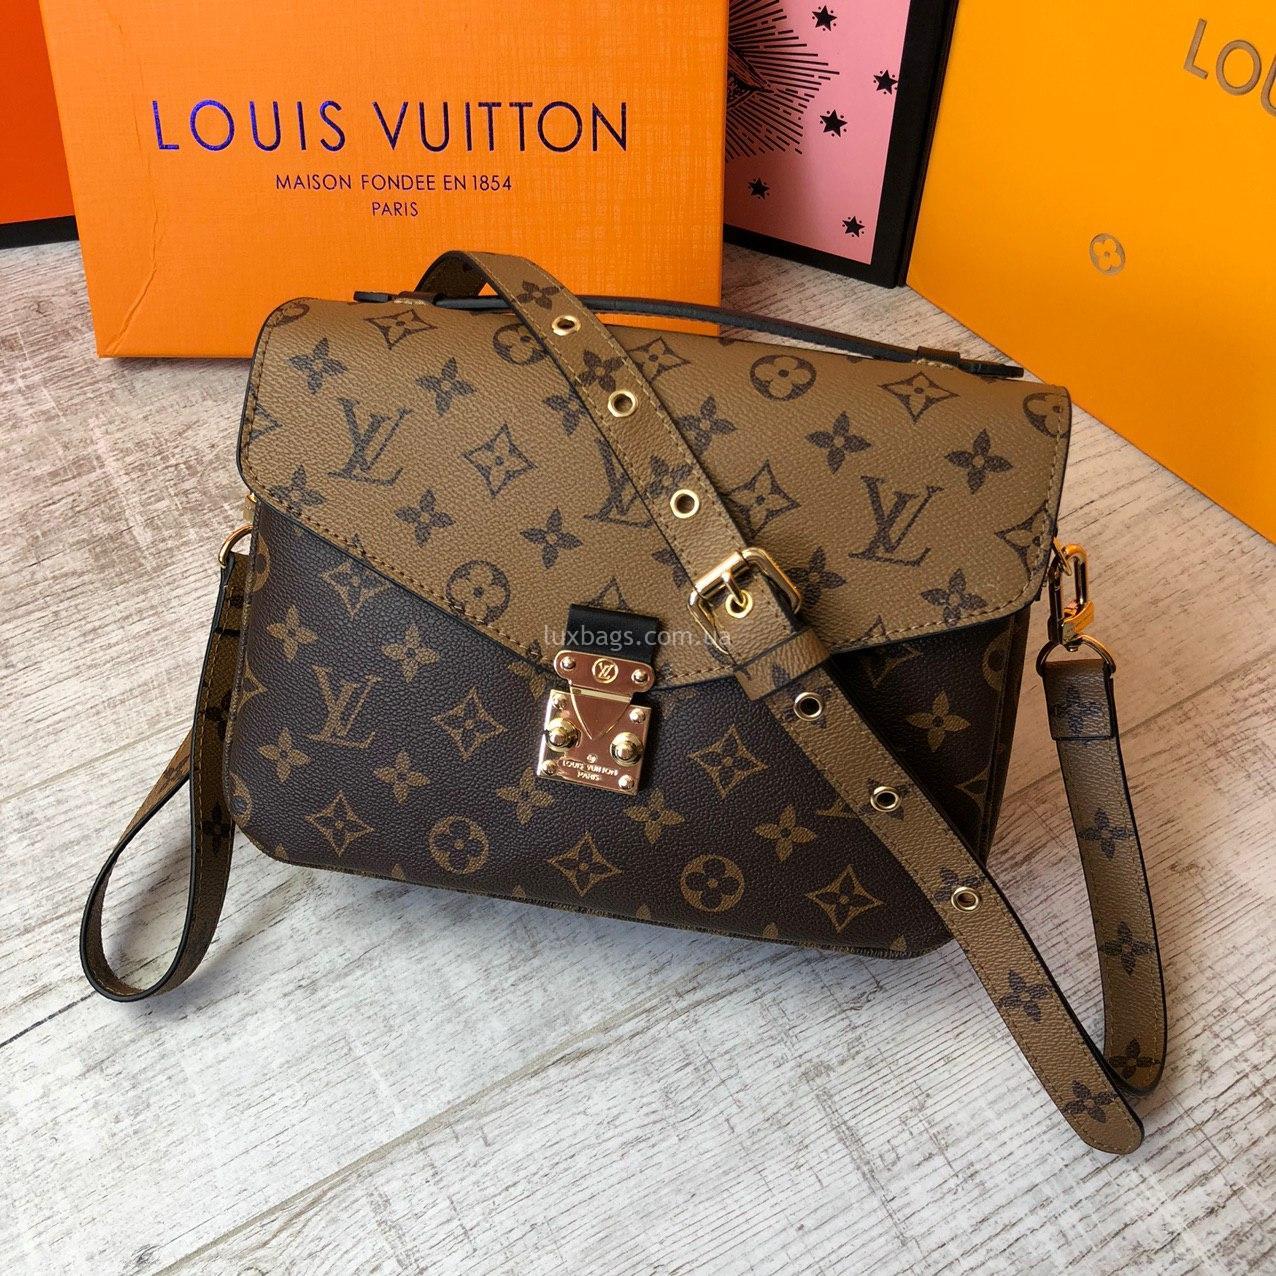 Как отличить сумку оригинал Луи Витон от подделки как определить и  проверить подлинность сумки Louis Vuitton Луи Витон  Школа Шопинга